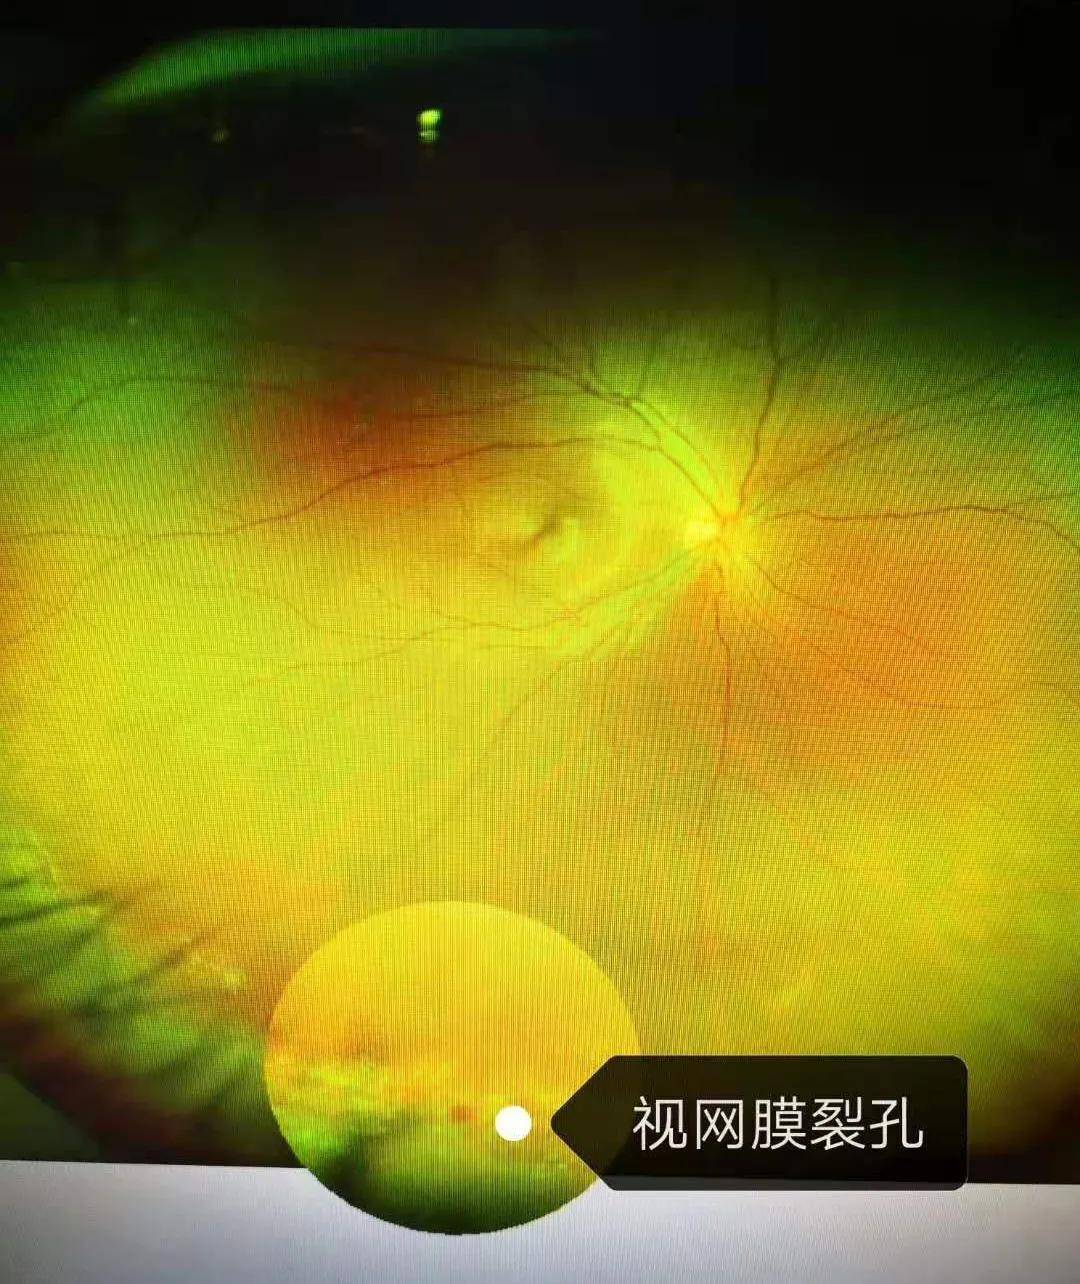 在做近视手术前的常规眼底检查时发现视网膜出现视网膜裂孔及变性带